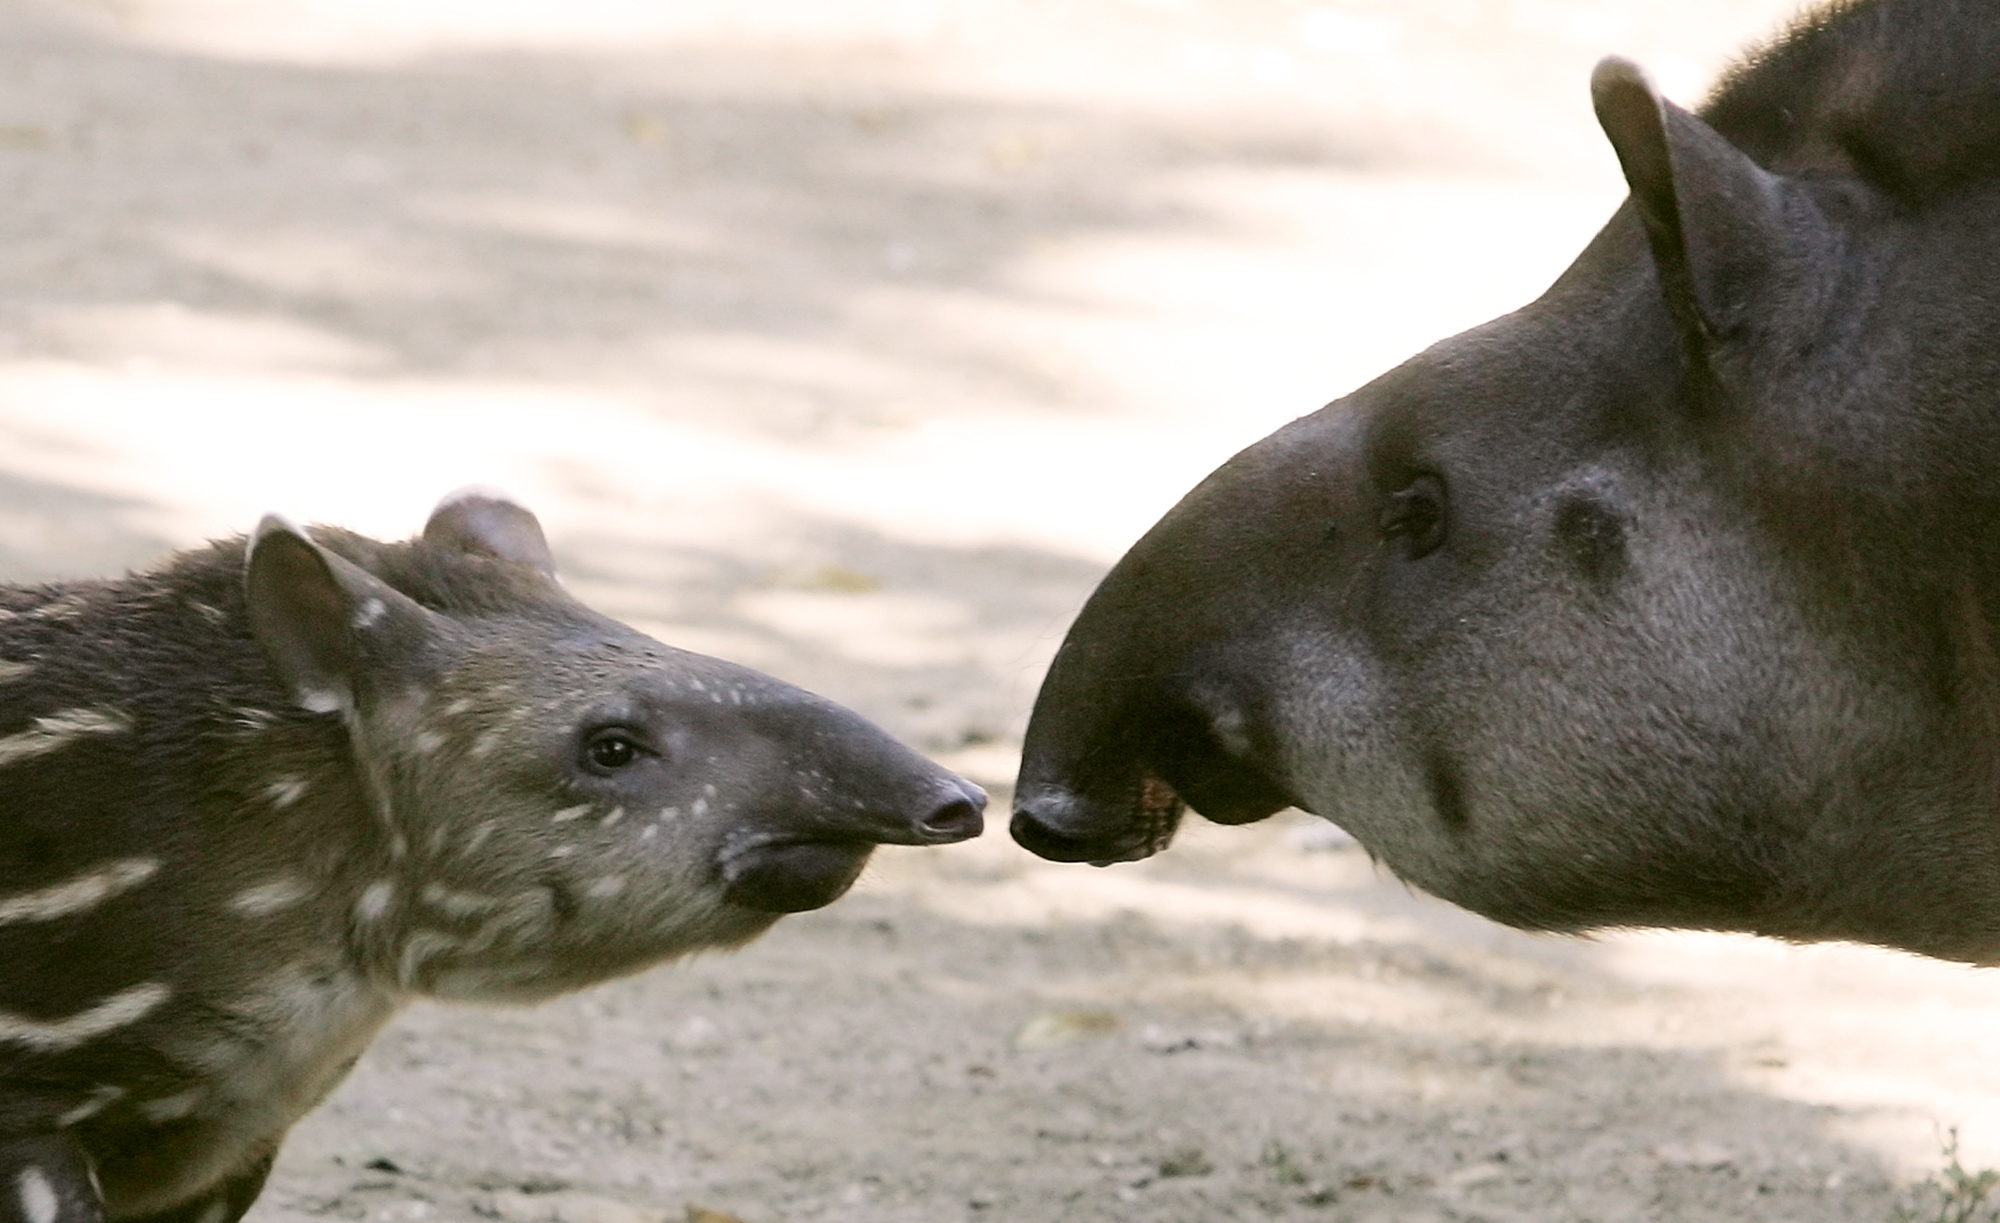 En tapirunge har sett världens ljus på Öland.